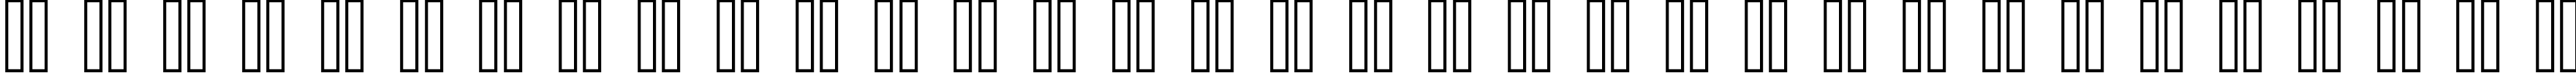 Пример написания русского алфавита шрифтом standard 09_56